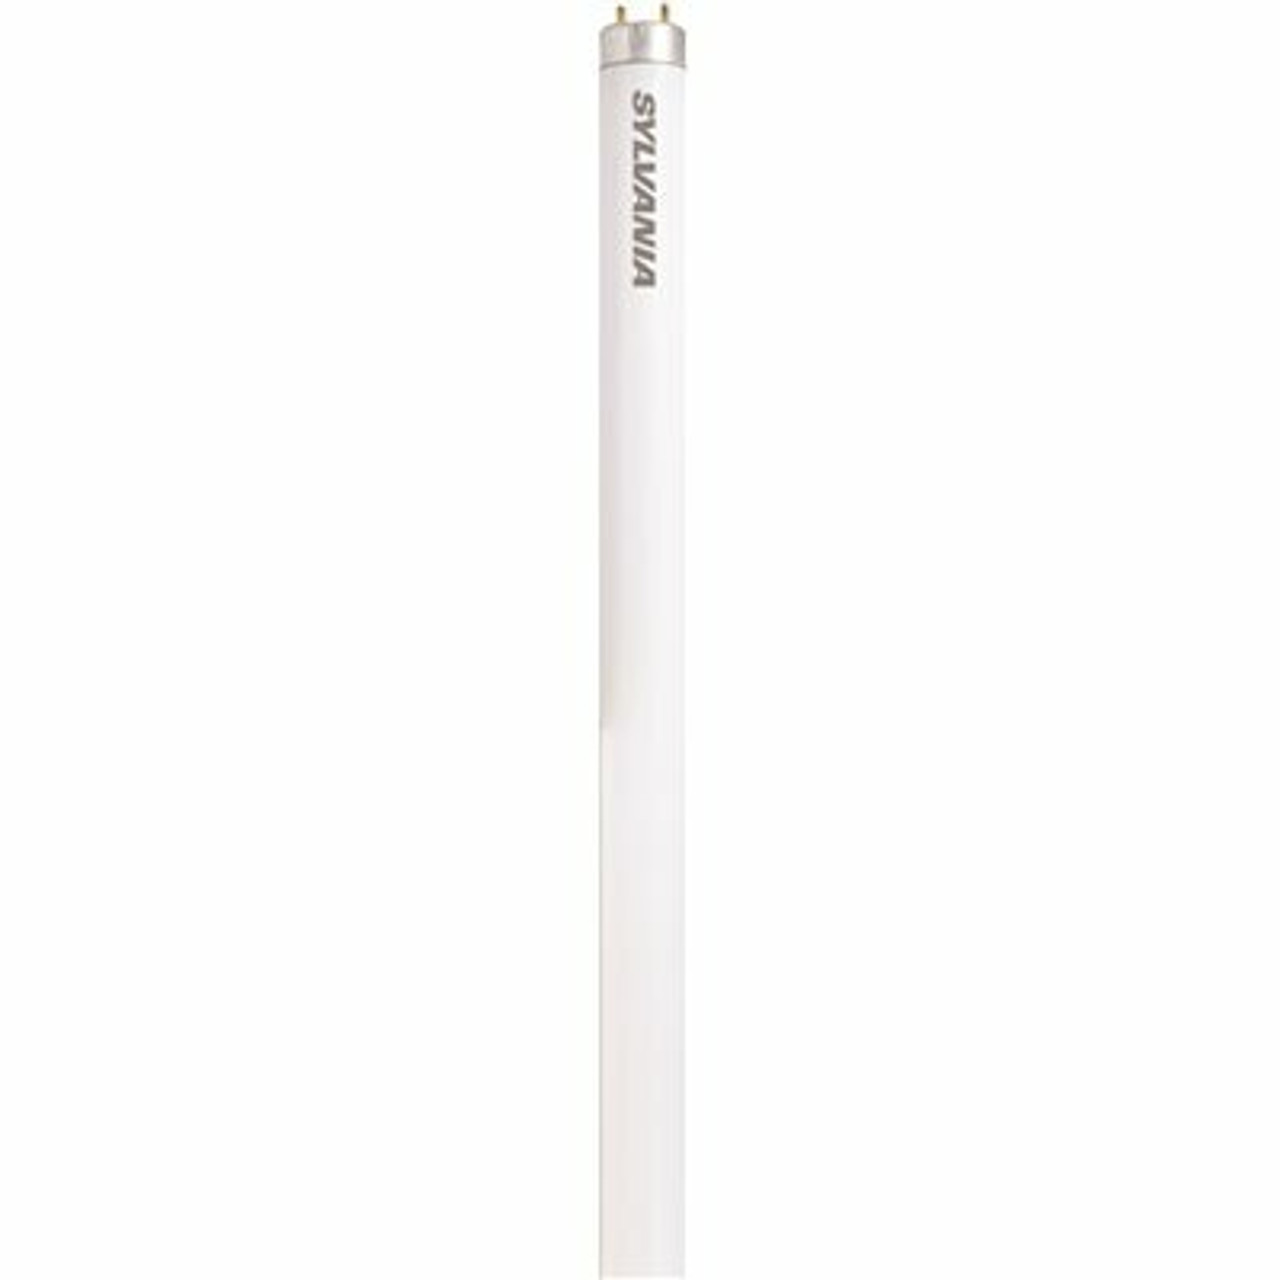 Sylvania 3 Ft. 30-Watt Linear T12 Fluorescent Tube Light Bulb, Cool White (1-Bulb)